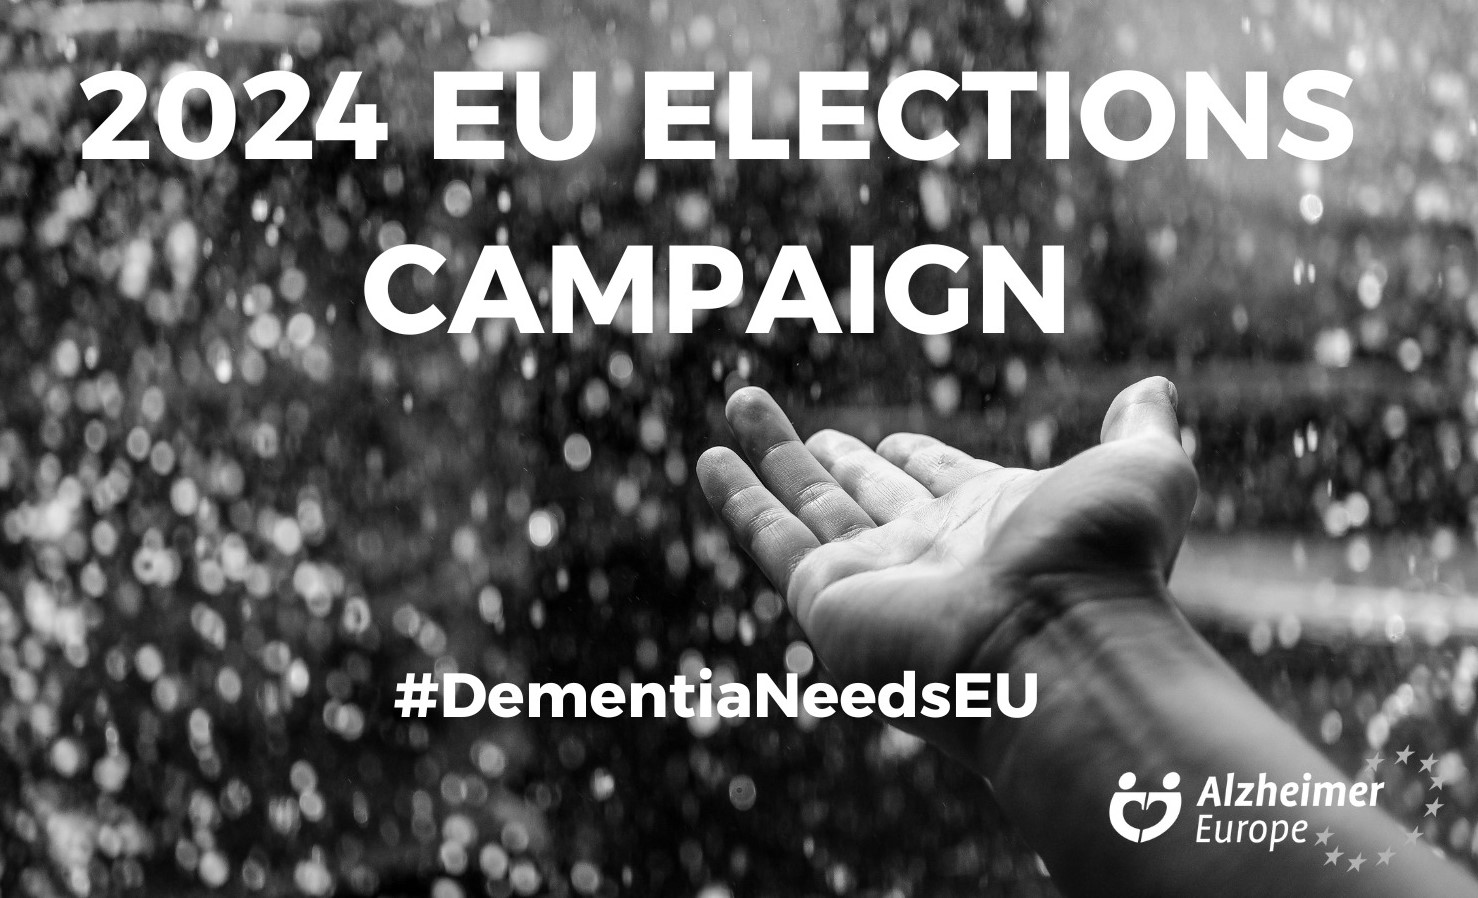 Stöd vårt upprop och kräv att Demens blir en politisk fråga som prioriteras i EU! Skriv under namnlistan idag!